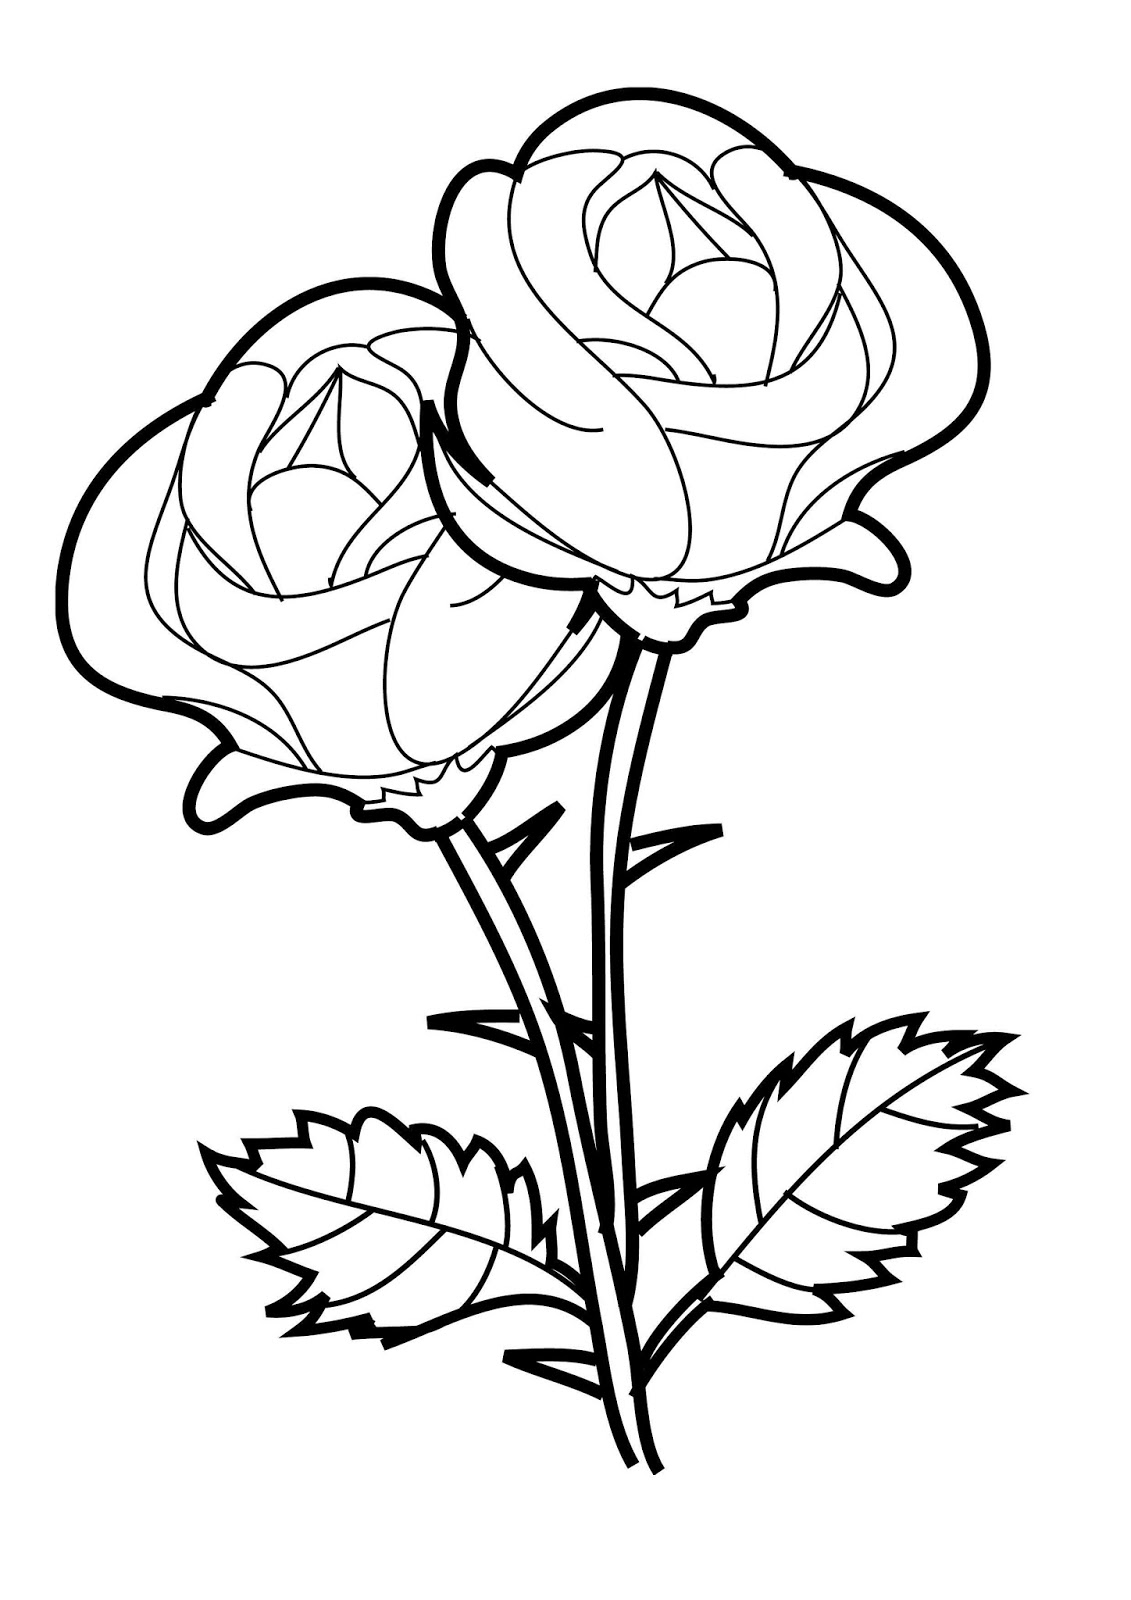 Los dibujos para colorear : Dibujos de rosas para colorear : ramos